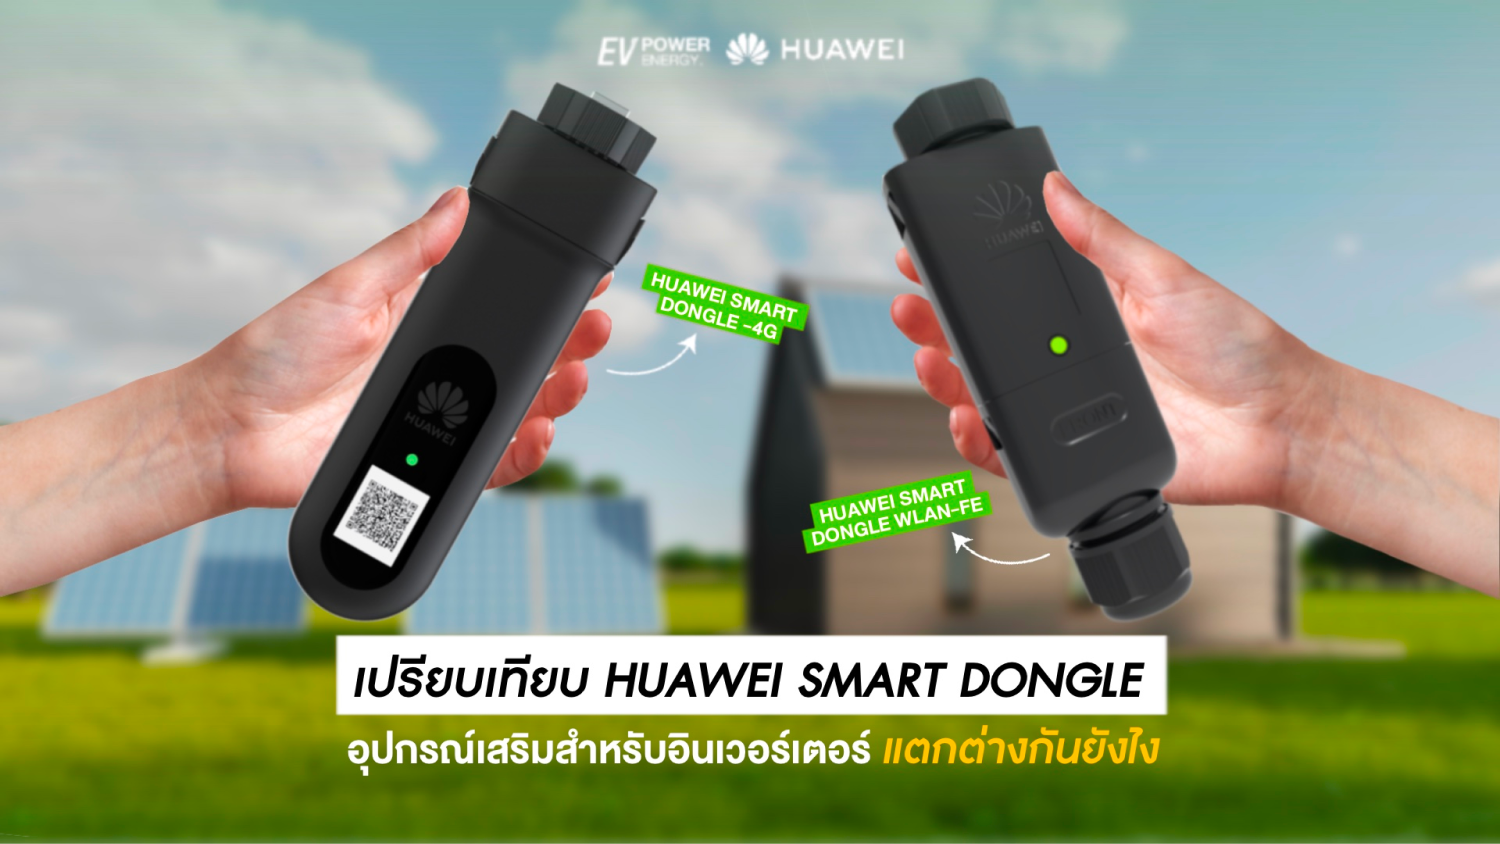 เปรียบเทียบ Smart Dongle-4G กับ Smart Dongle-WLAN-FE ต่างกันยังไง